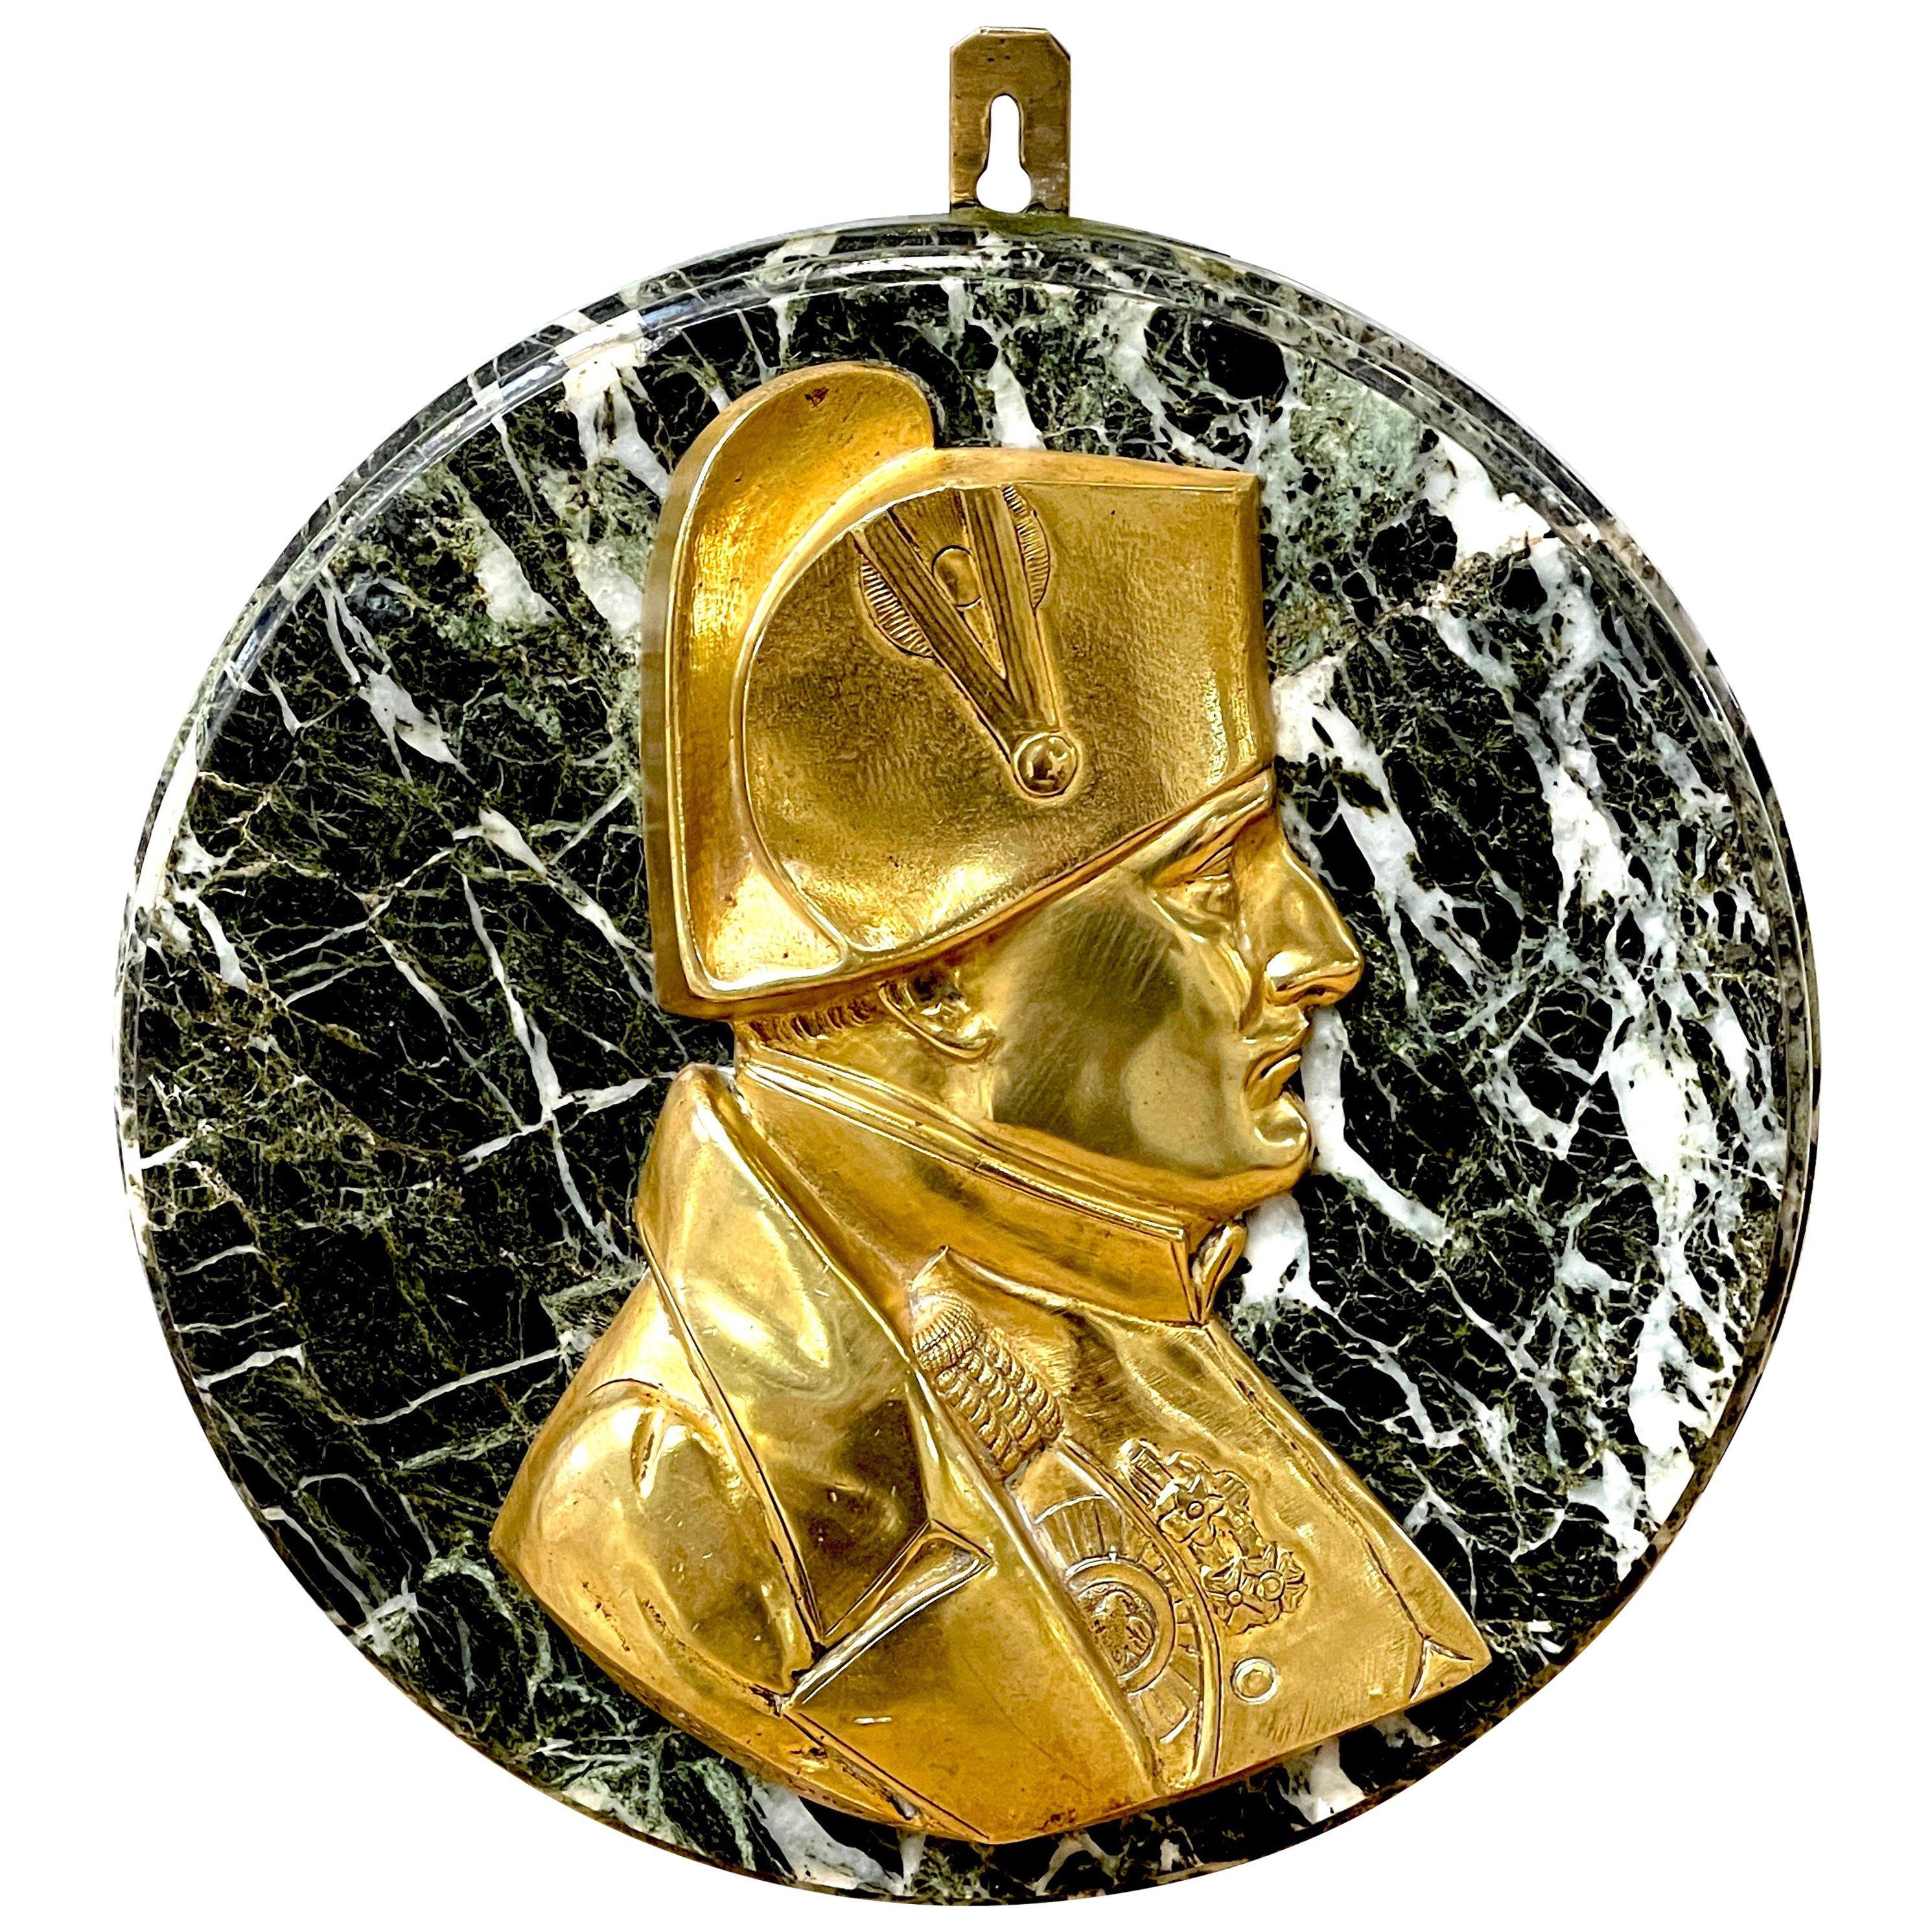 Plaque de Napoléon du 19e siècle en bronze doré et marbre, par Pierre Jean David D'Anger